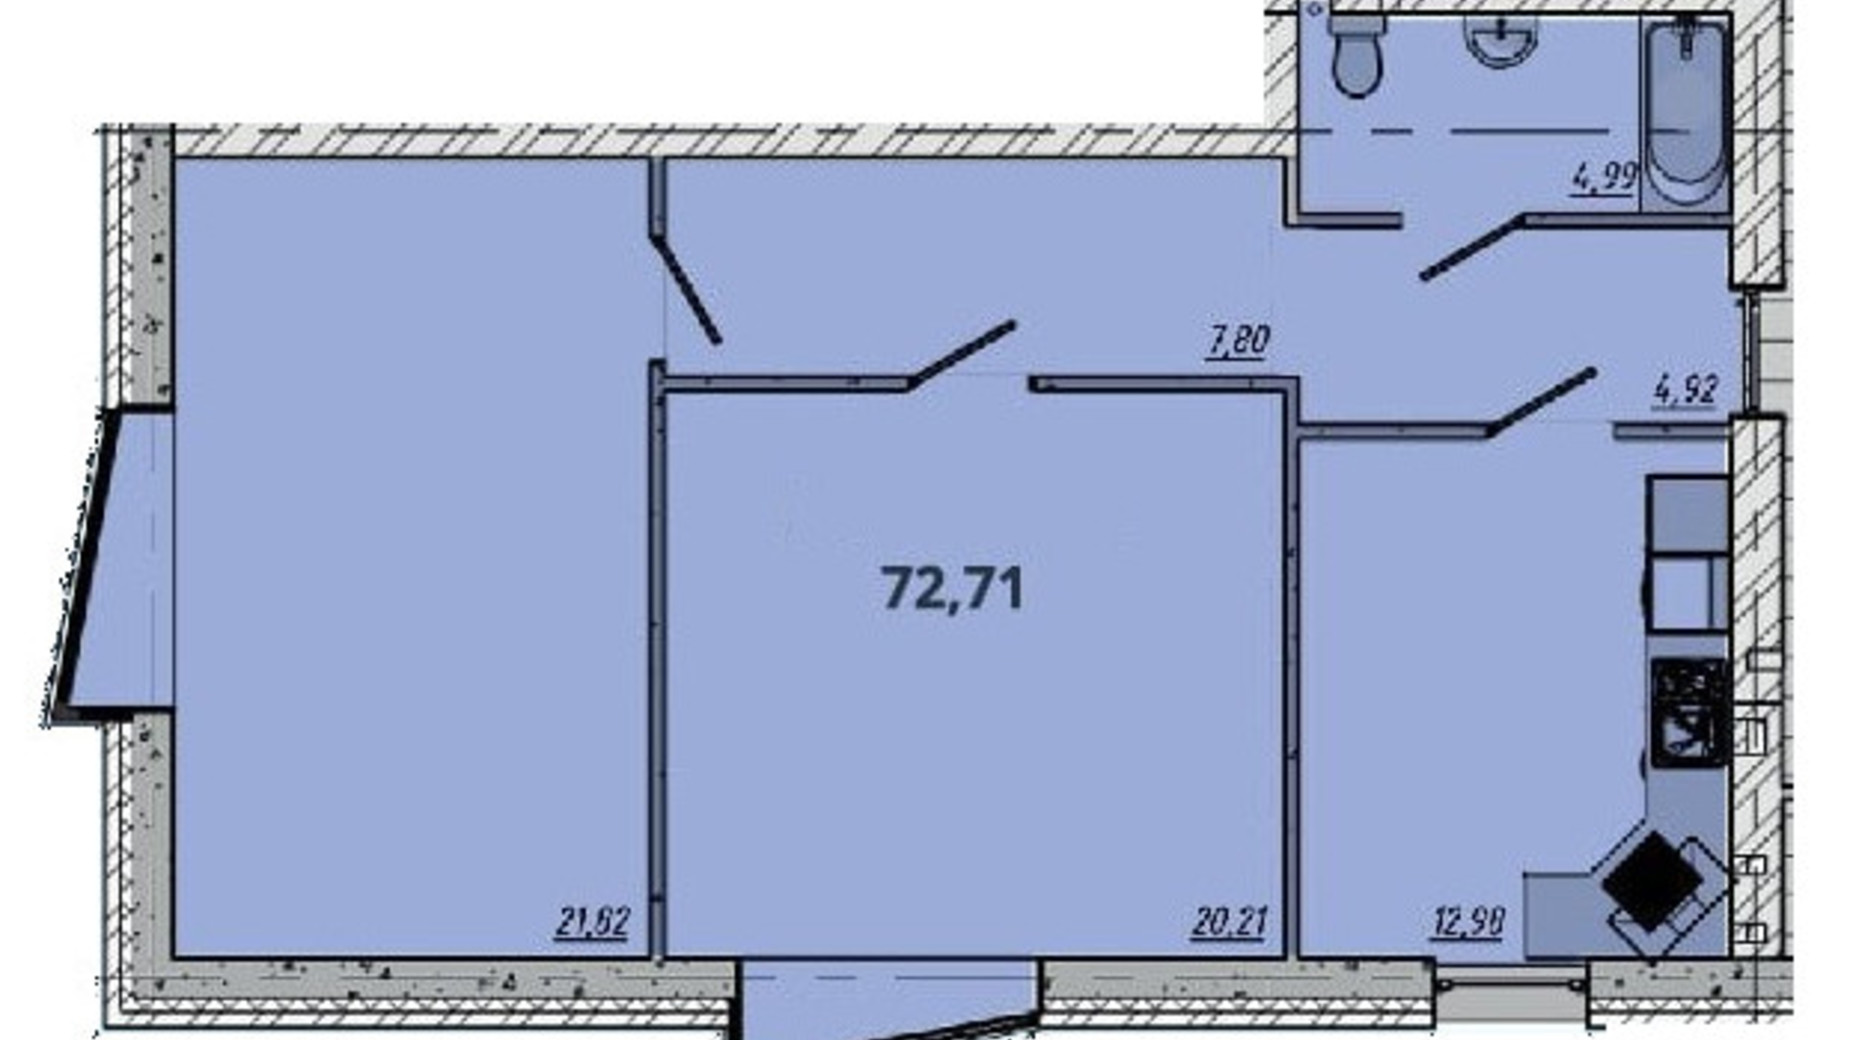 Планування 2-кімнатної квартири в ЖК Європейський квартал 72.71 м², фото 550076